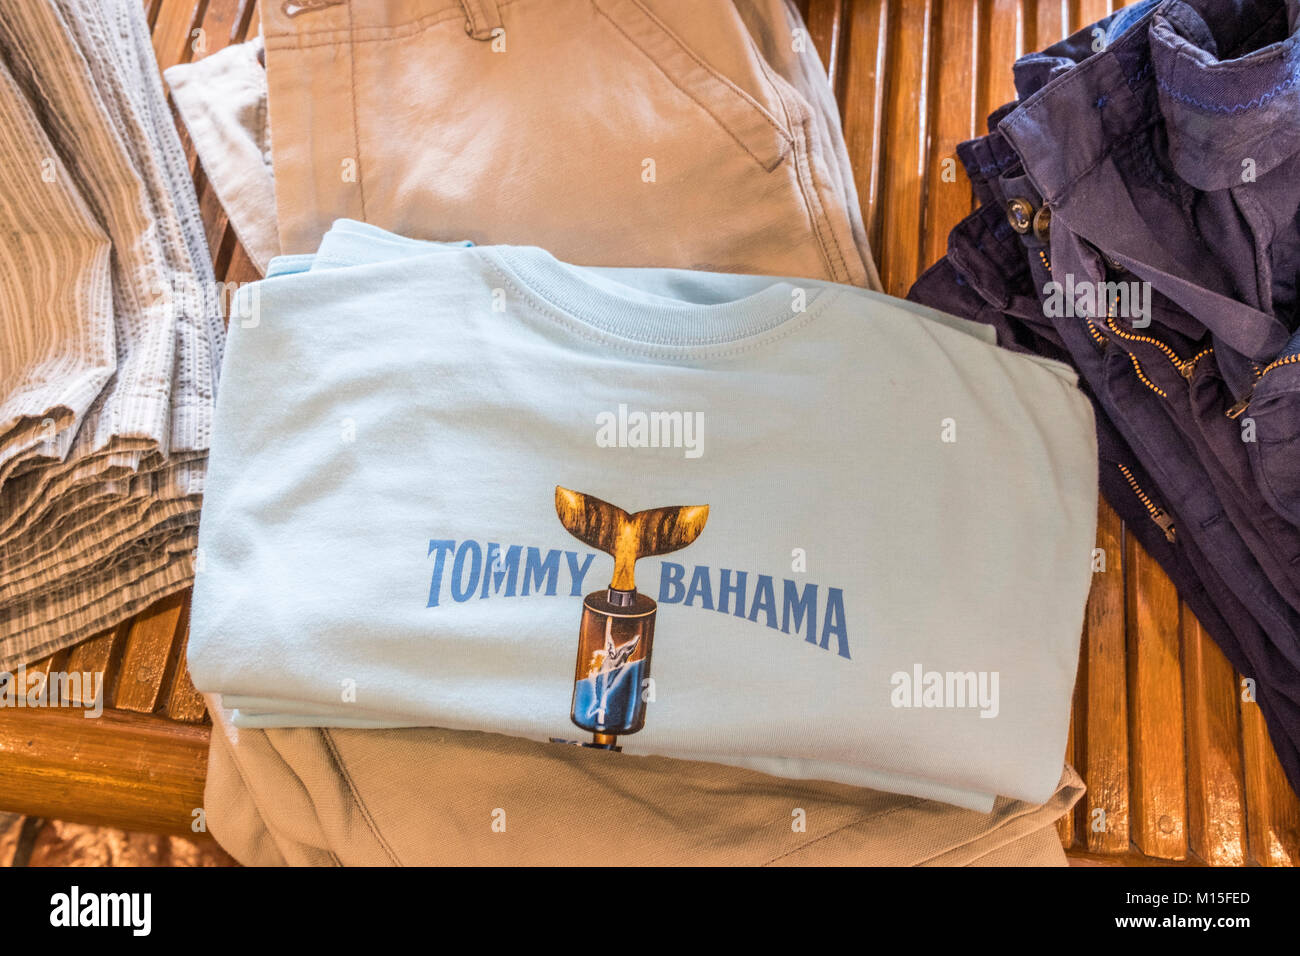 tommy bahama clothing